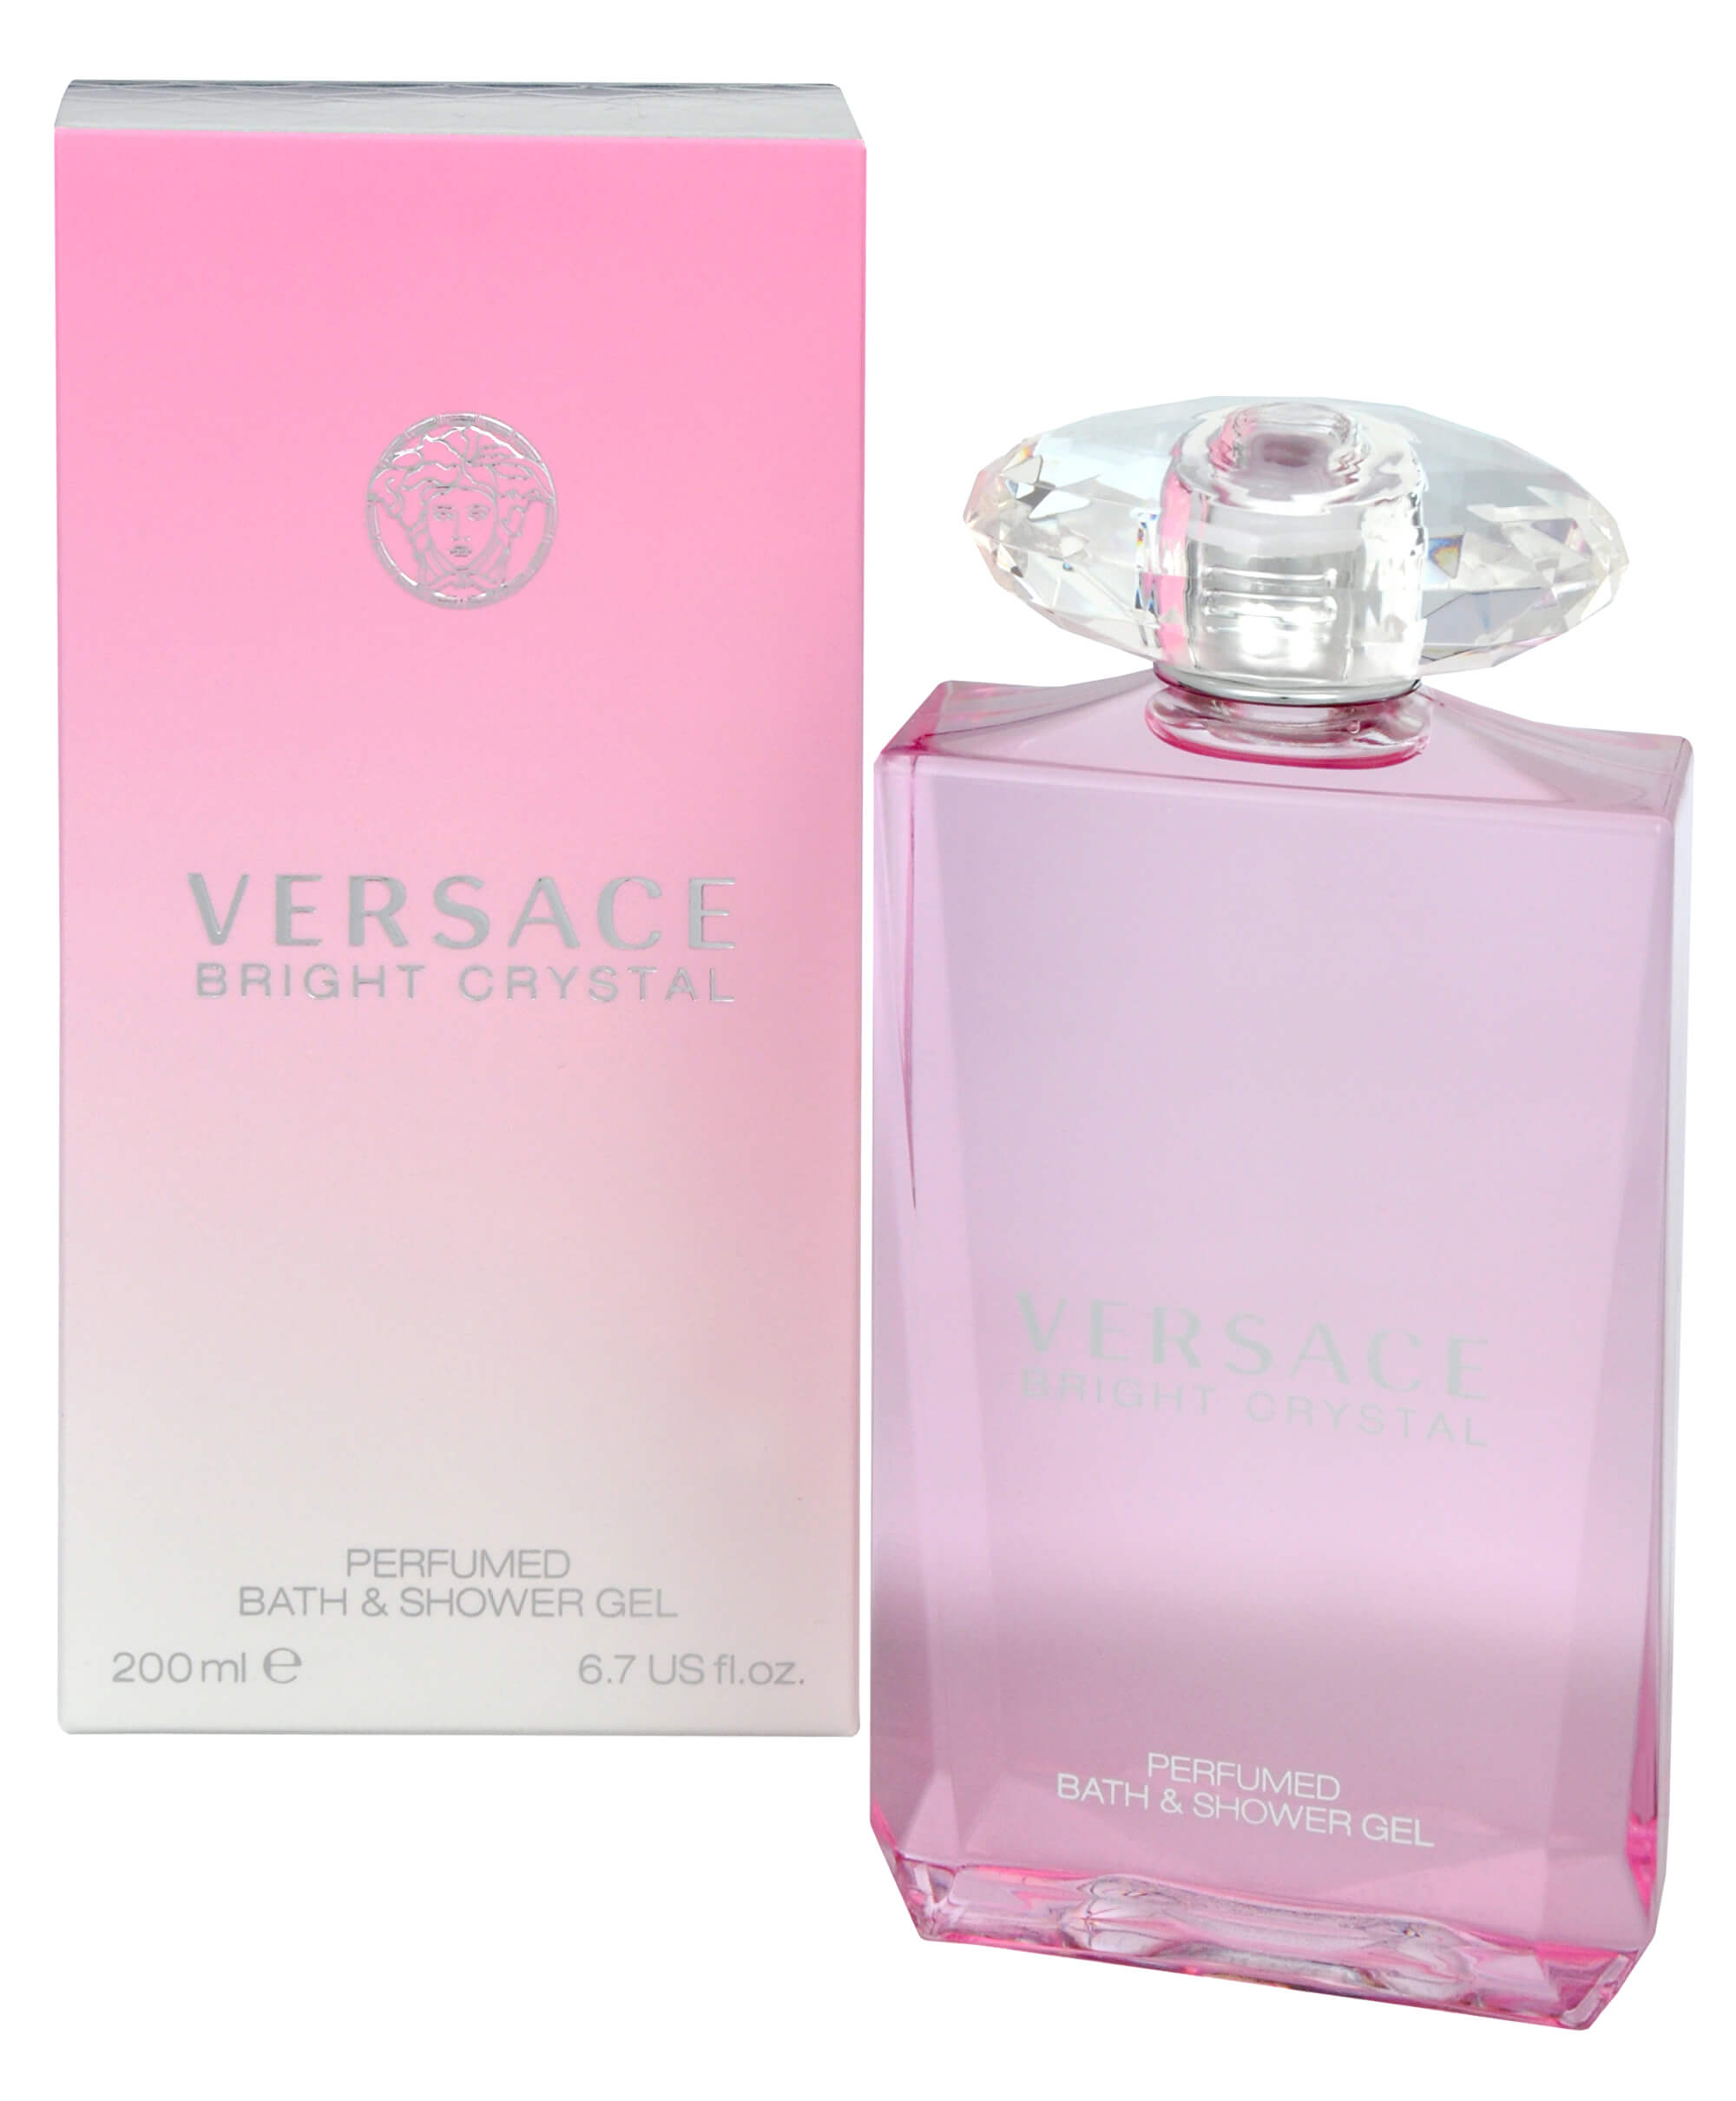 Versace Bright Crystal - sprchový gel 200 ml + 2 měsíce na vrácení zboží